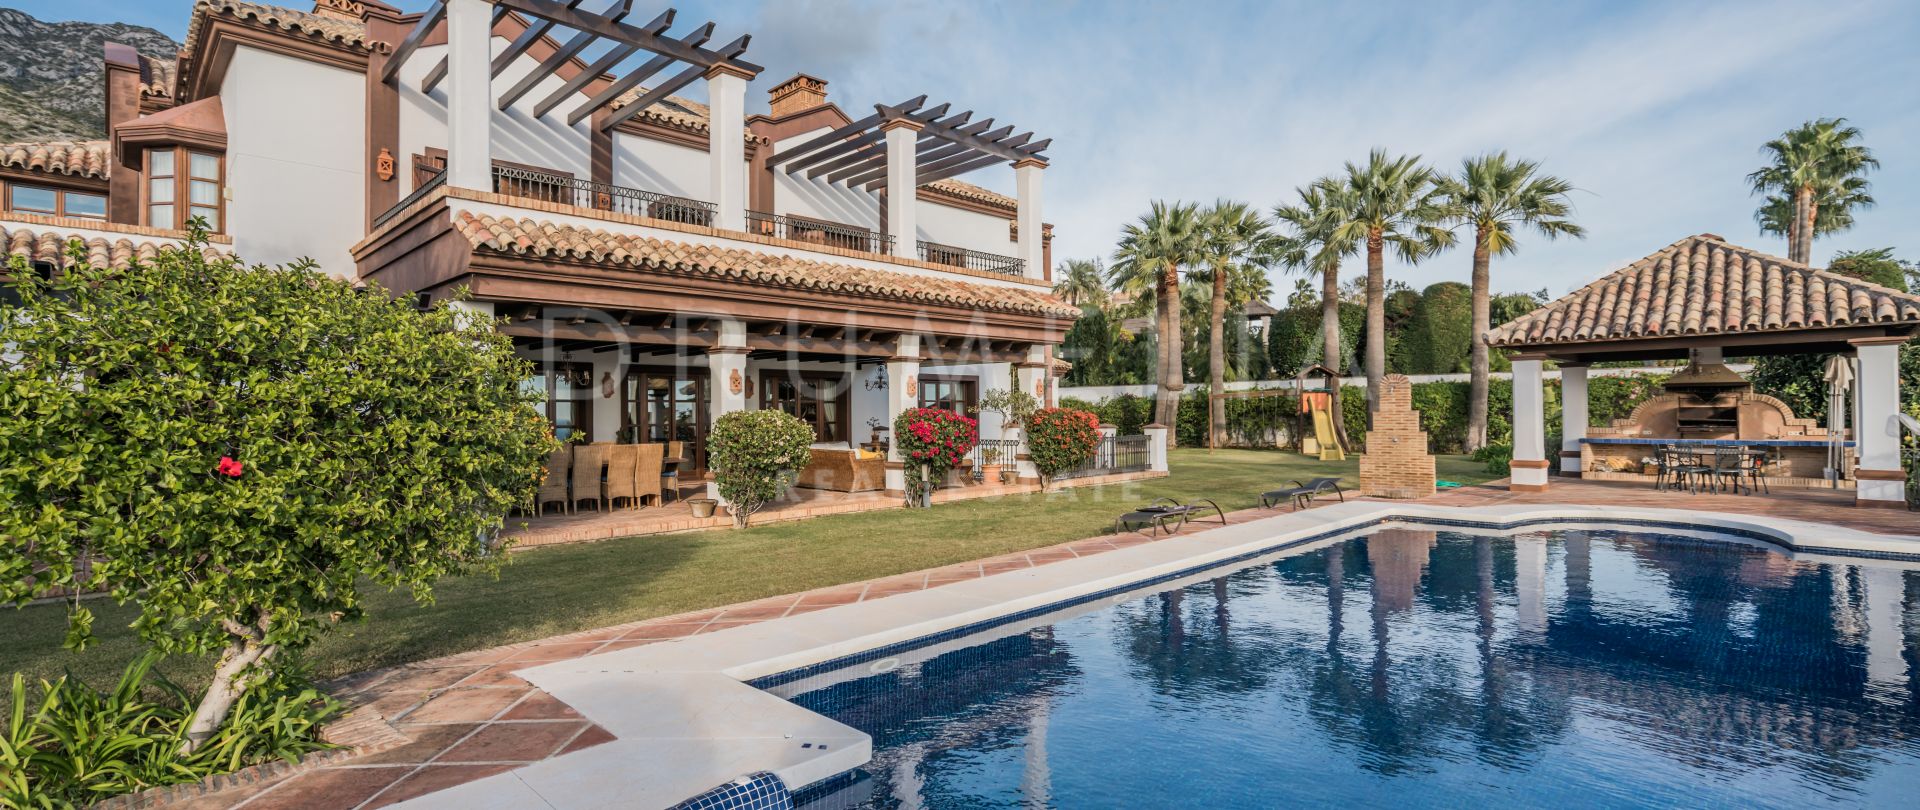 Villa de lujo de estilo Mediterráneo en Sierra Blanca, Milla de Oro, Marbella